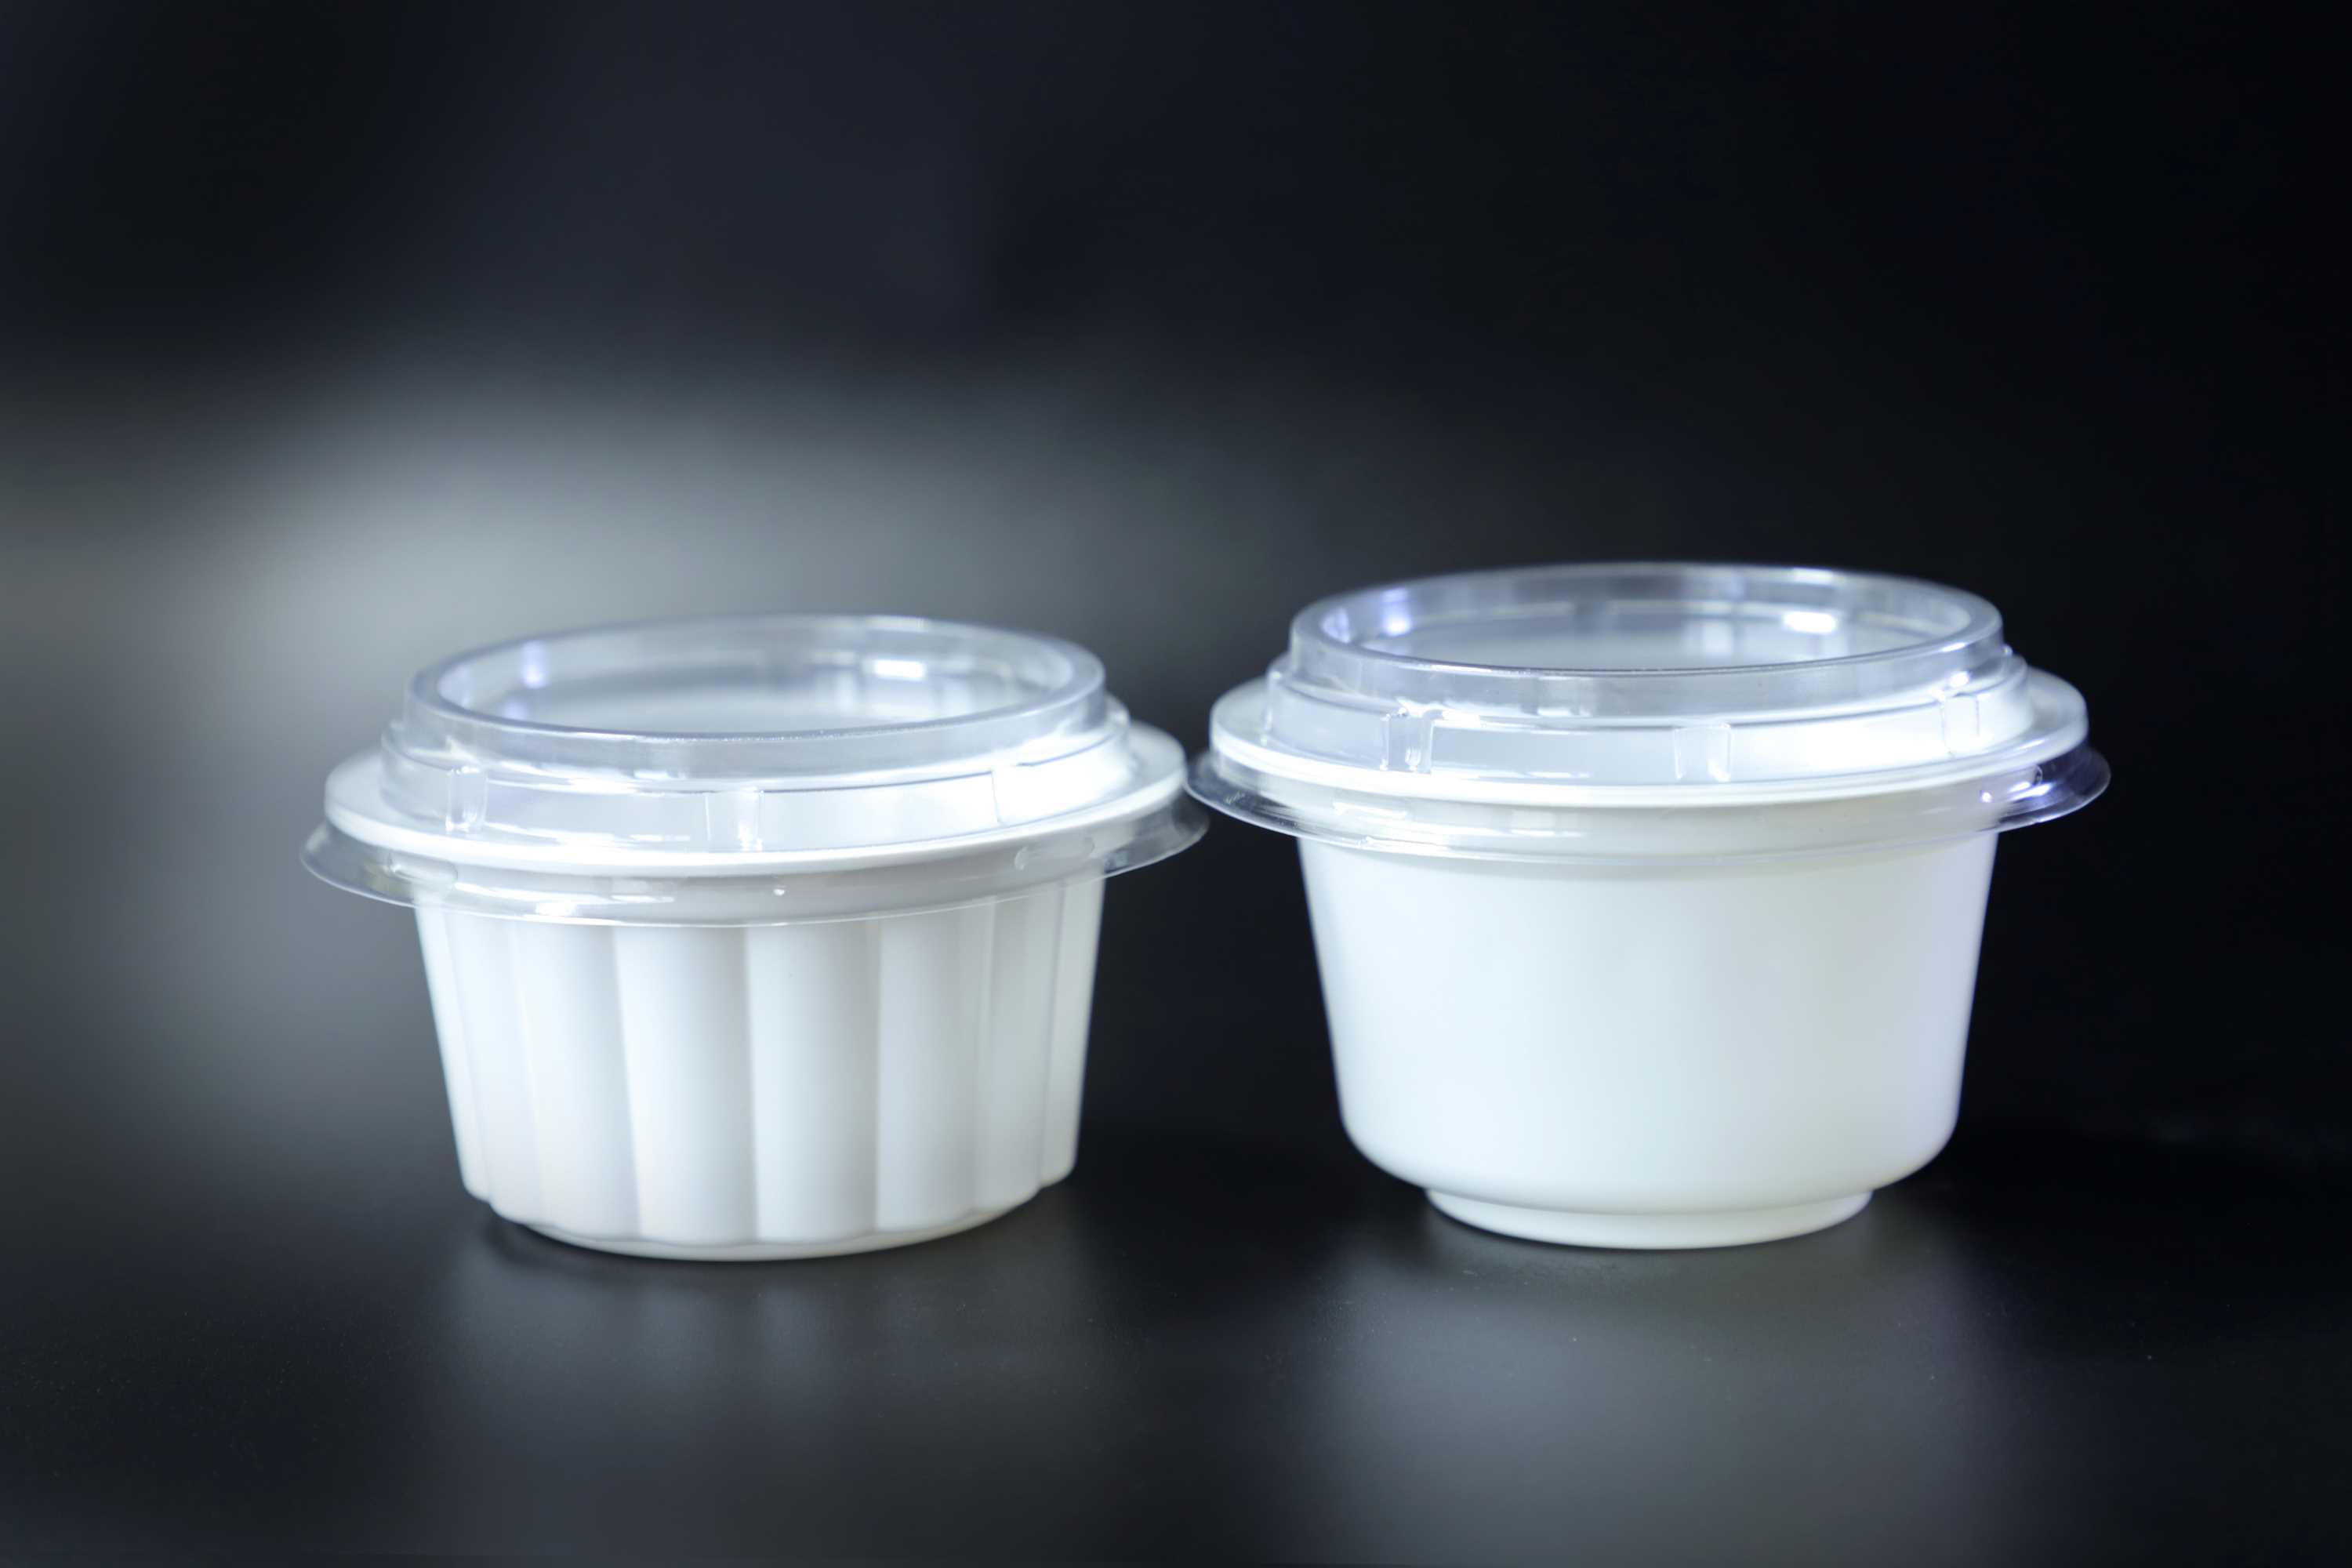 97口径酸奶杯 果冻杯 调料杯 PP材质生产 安全环保 鑫邦